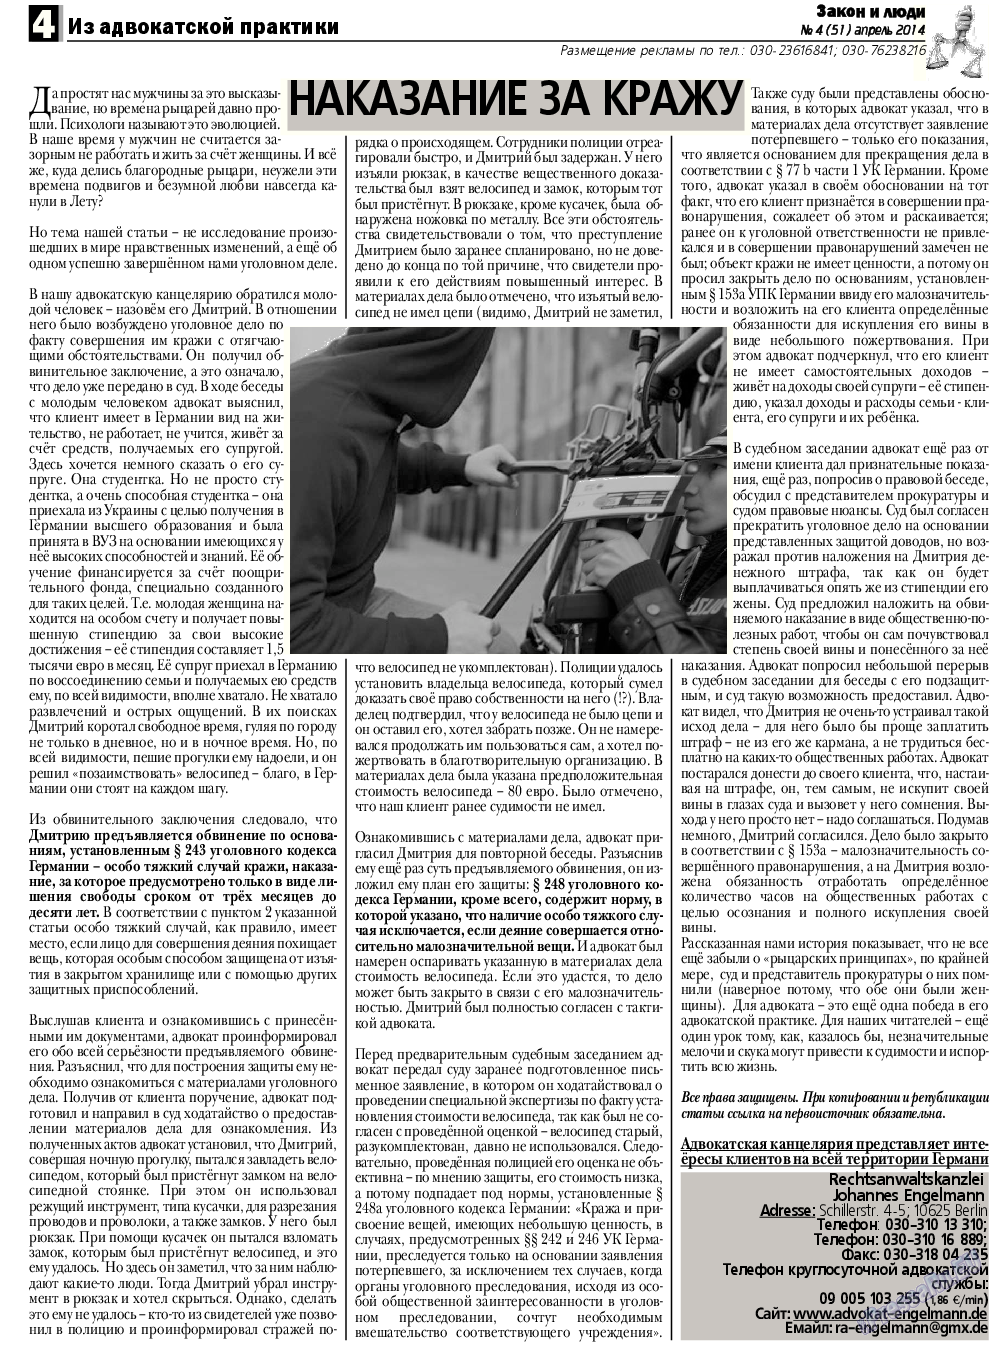 Закон и люди, газета. 2014 №4 стр.4